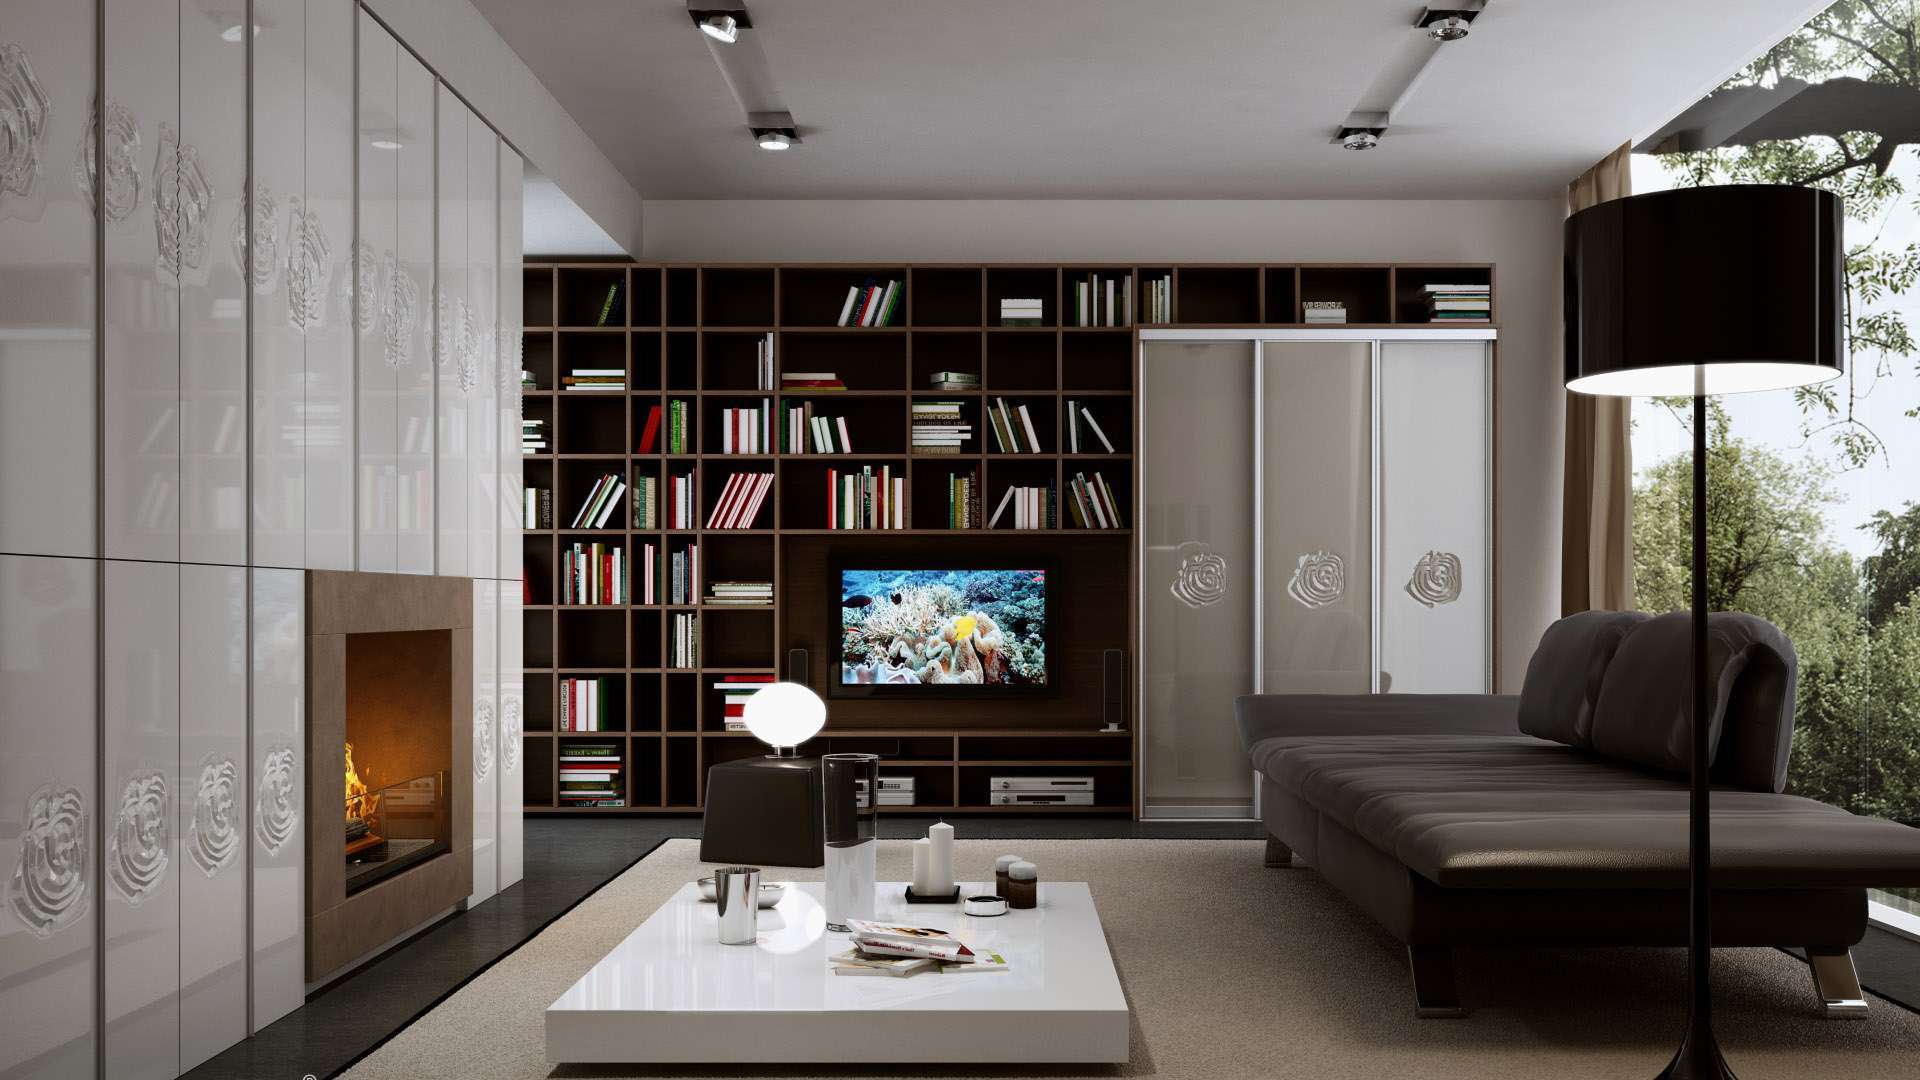 Tolóajtós beépített szekrény és nyitott könyvespolc rendszer a nappaliban